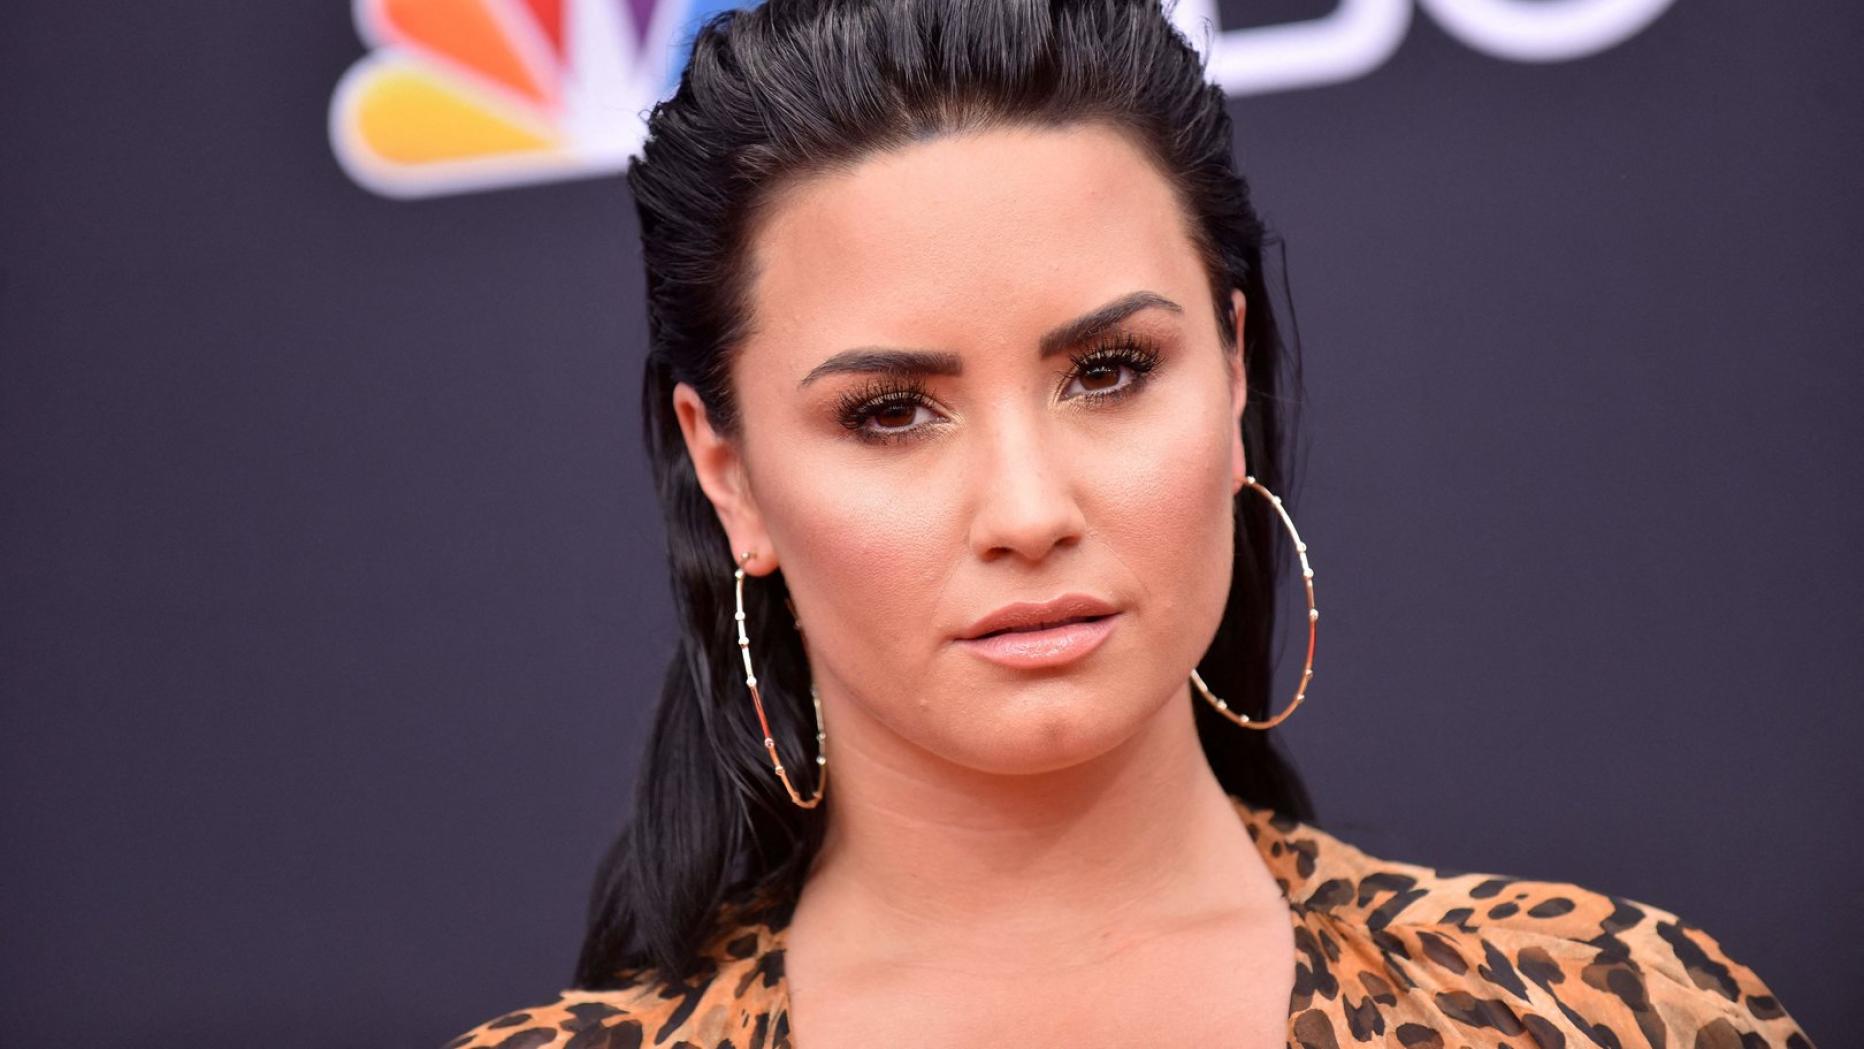 Demi Lovato von Dealer in Nacht ihrer Überdosis sexuell missbraucht |  kurier.at